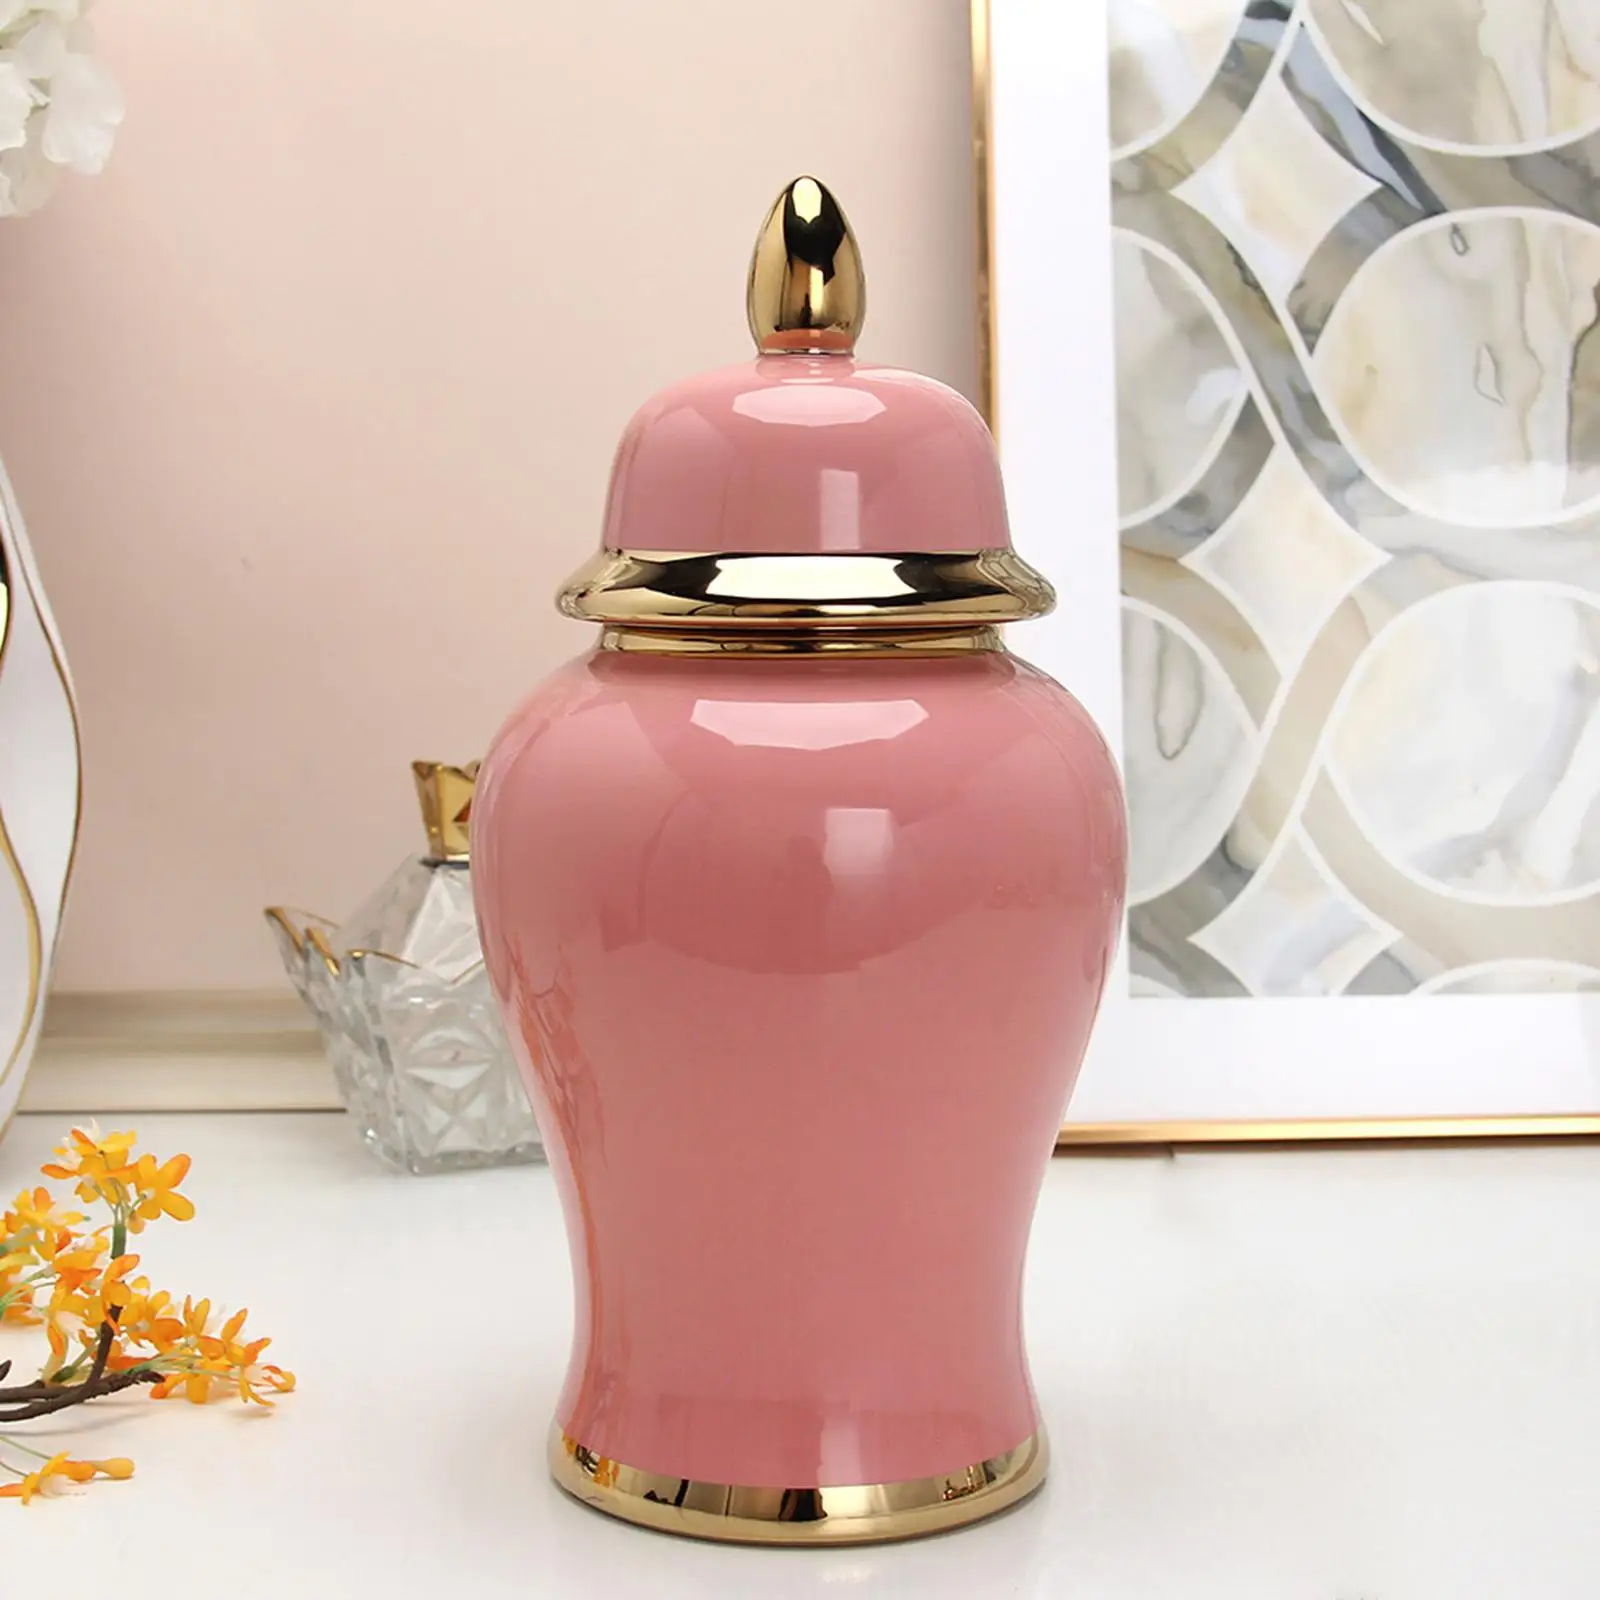 Chinese Decorative Storage Porcelain Ginger Jars Desktop Ceramic Flower Vase